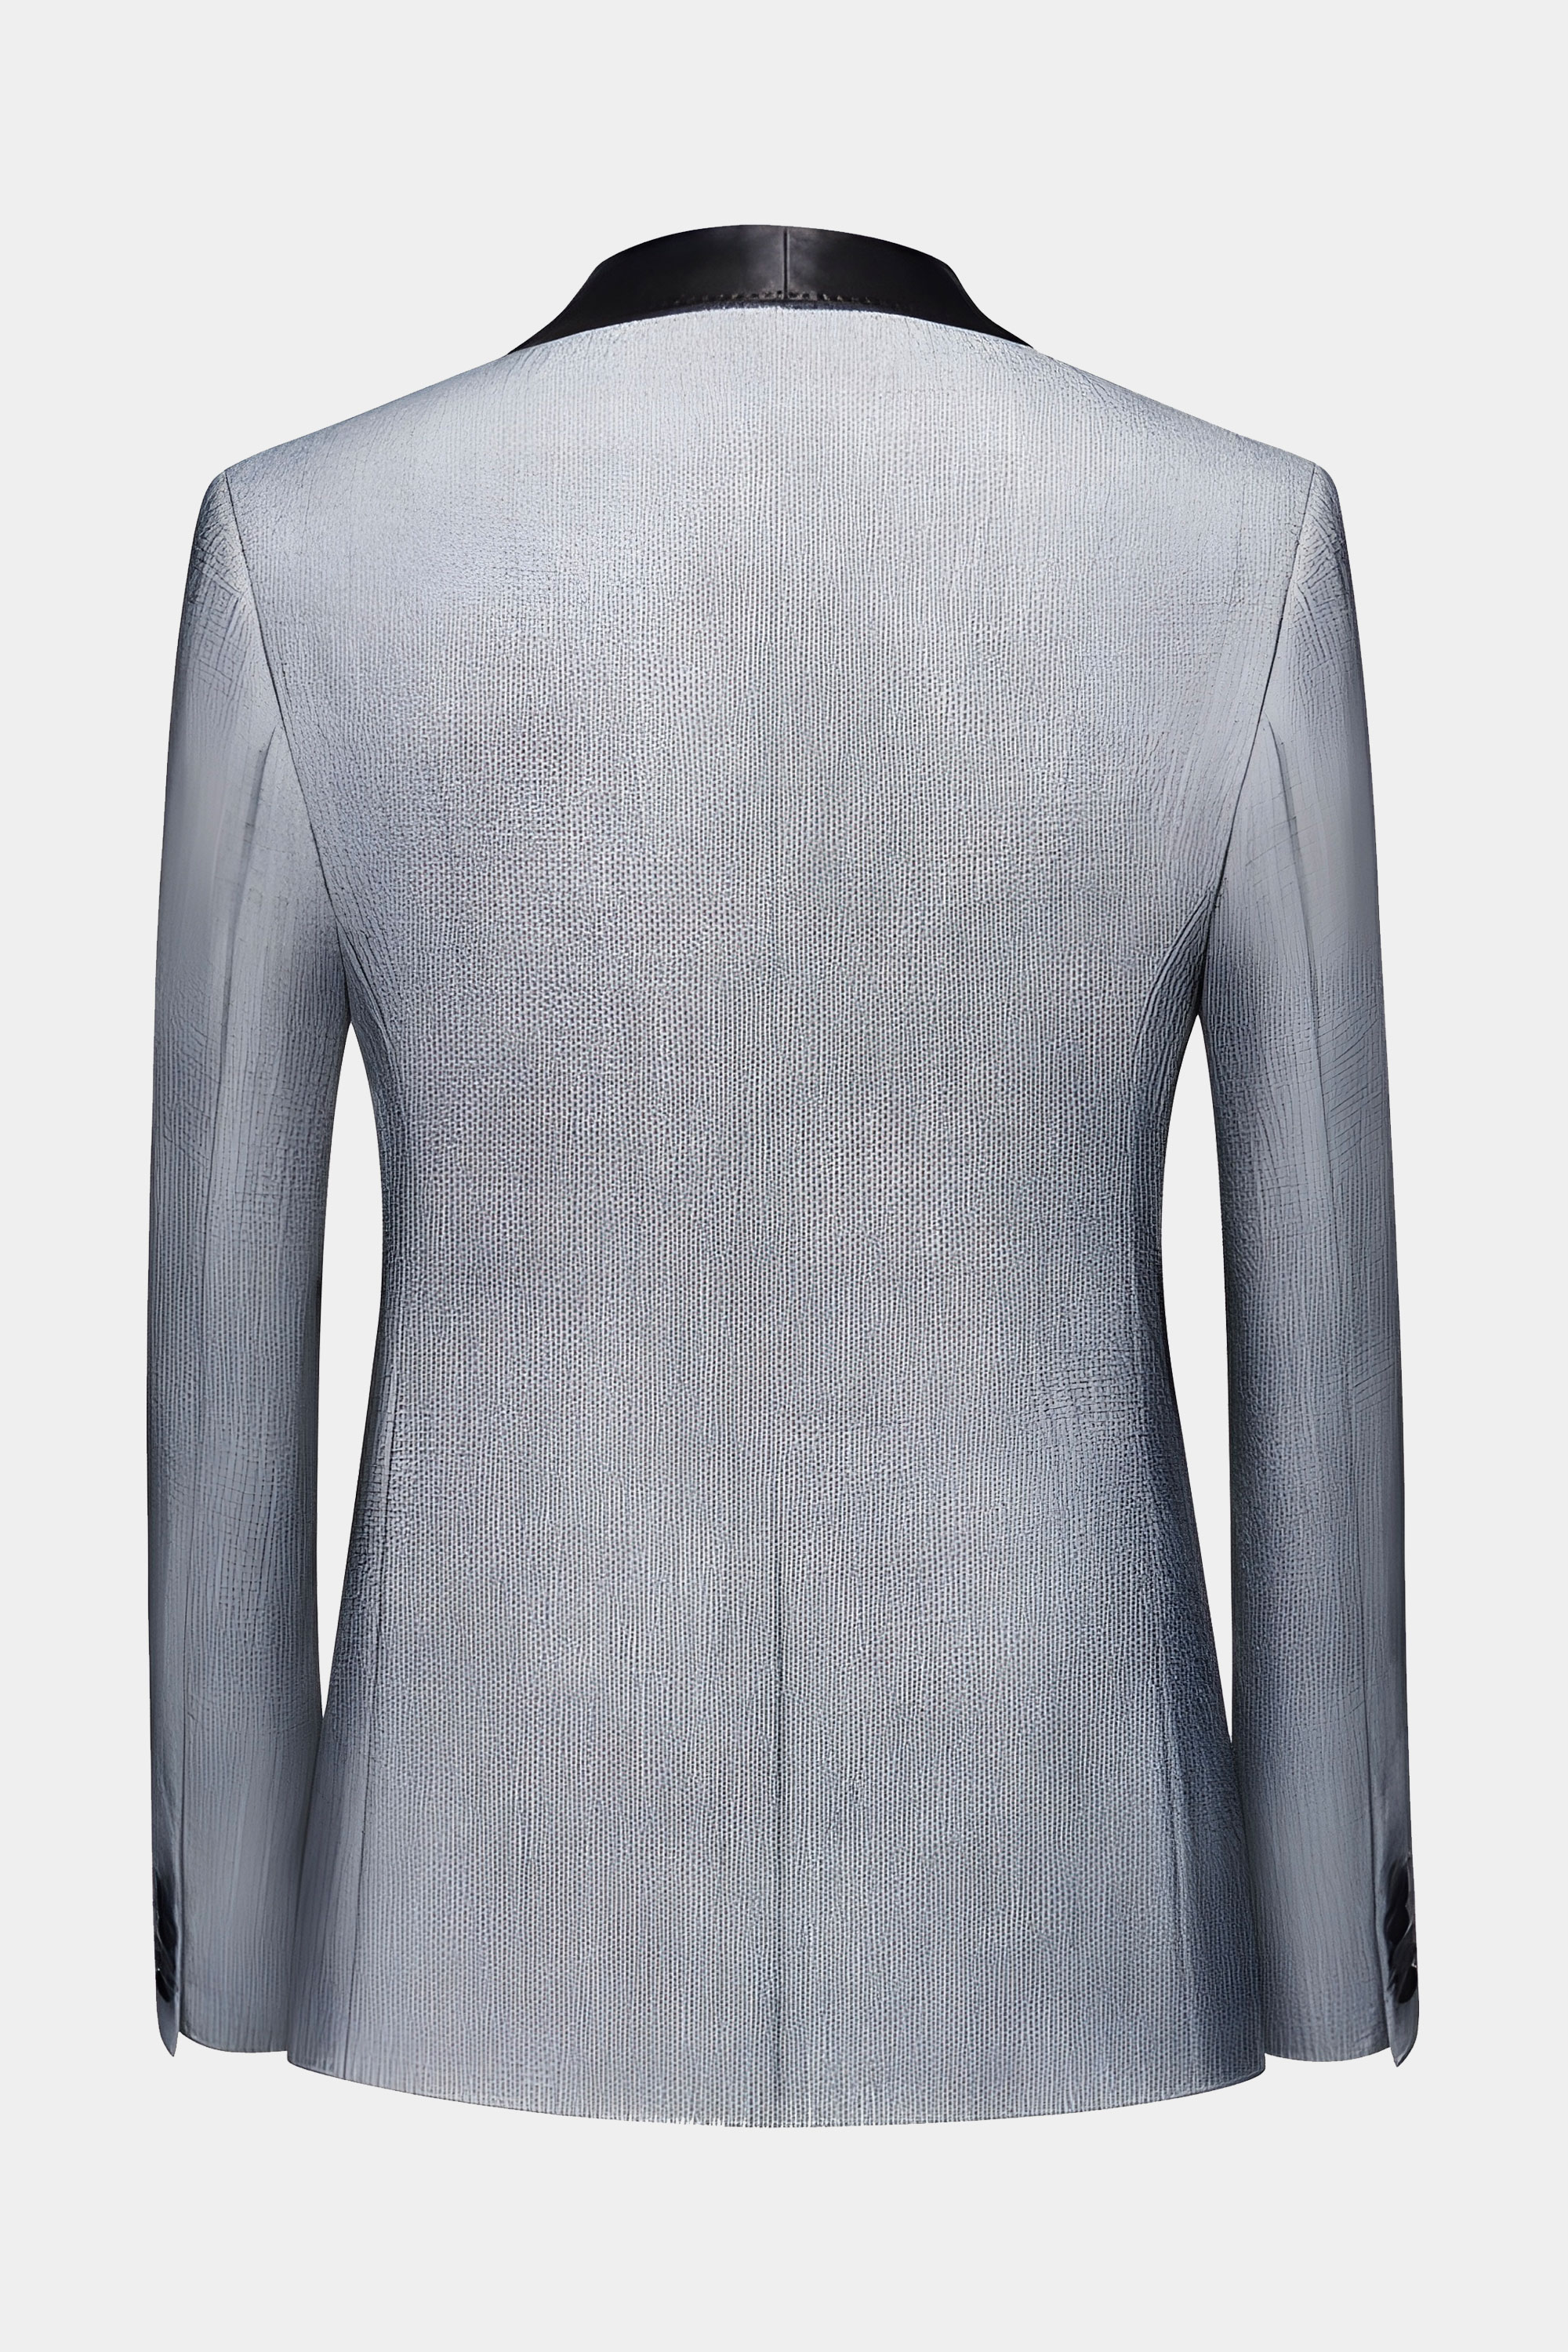 Grey Tweed Tuxedo Suit | Gentleman's Guru